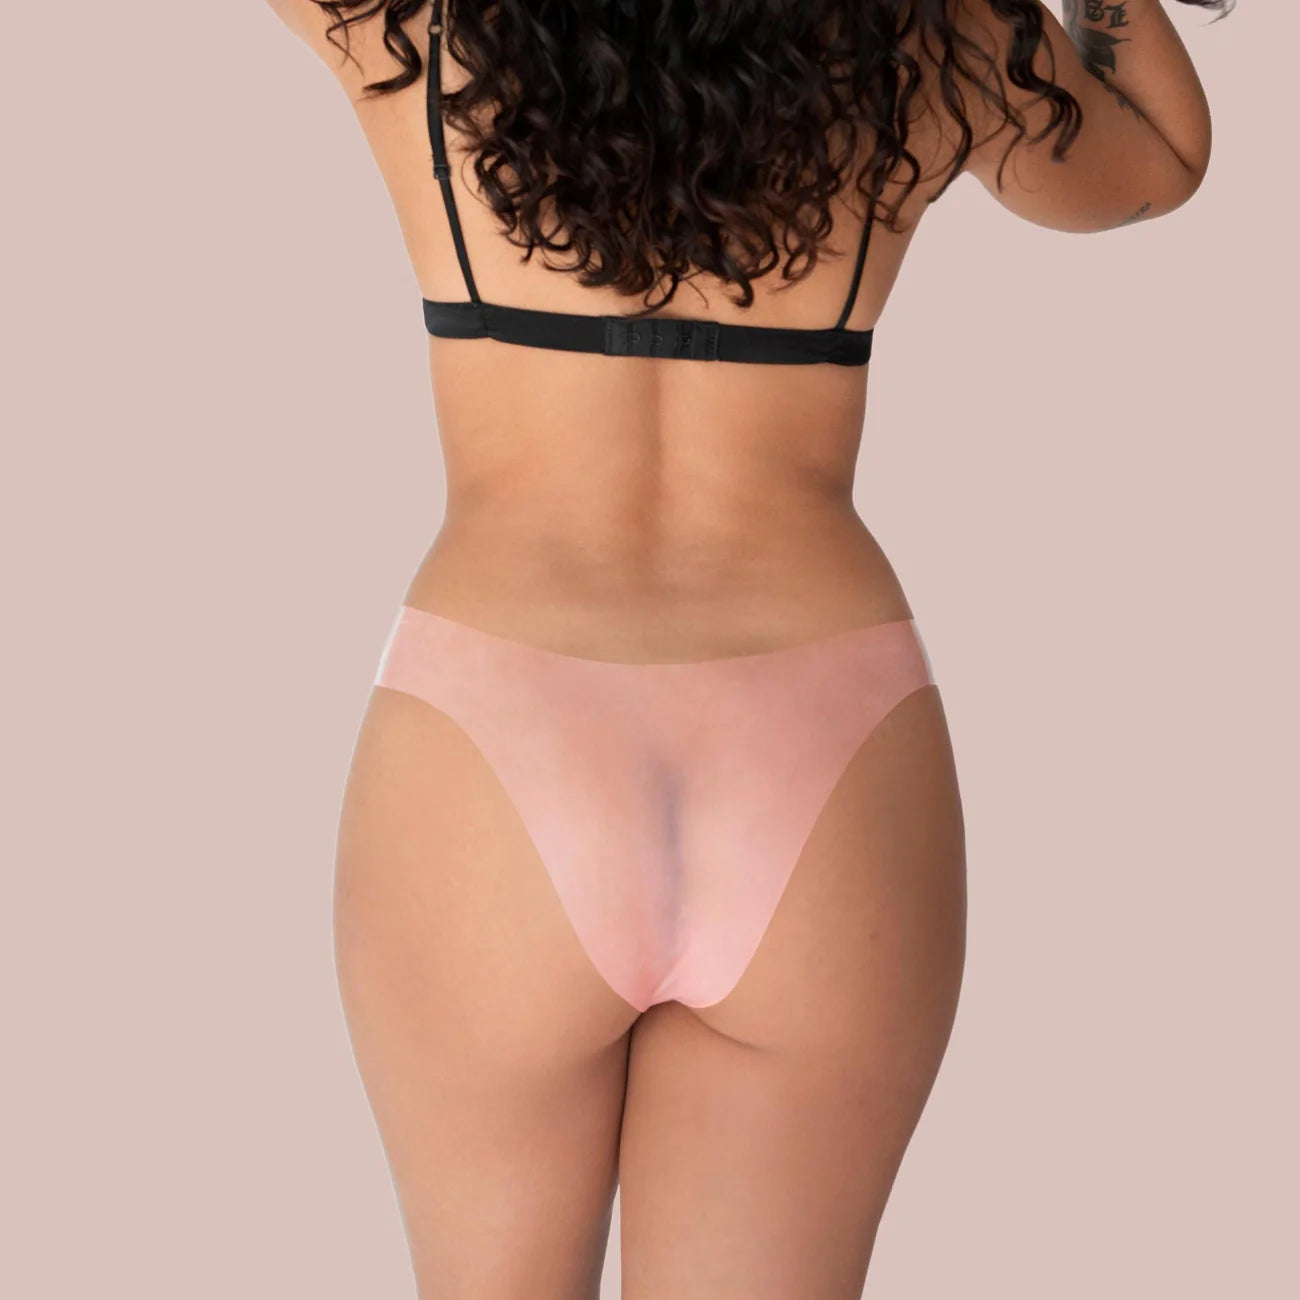 Lorals Bikini Latex Underwear